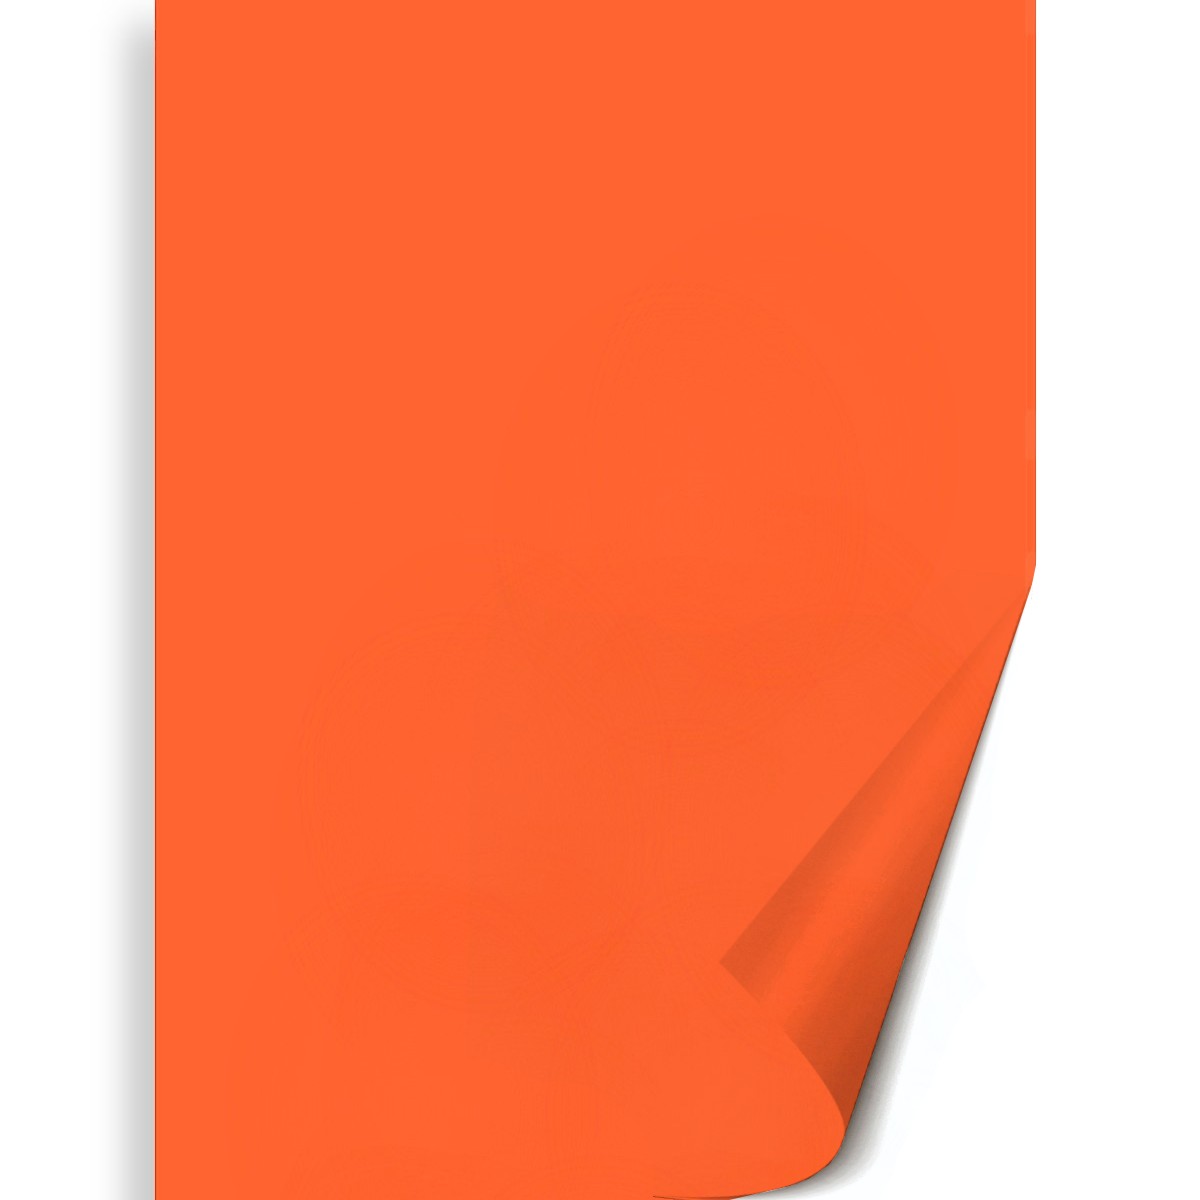 Hartie portocalie 50x70cm 130g Meyco 27204